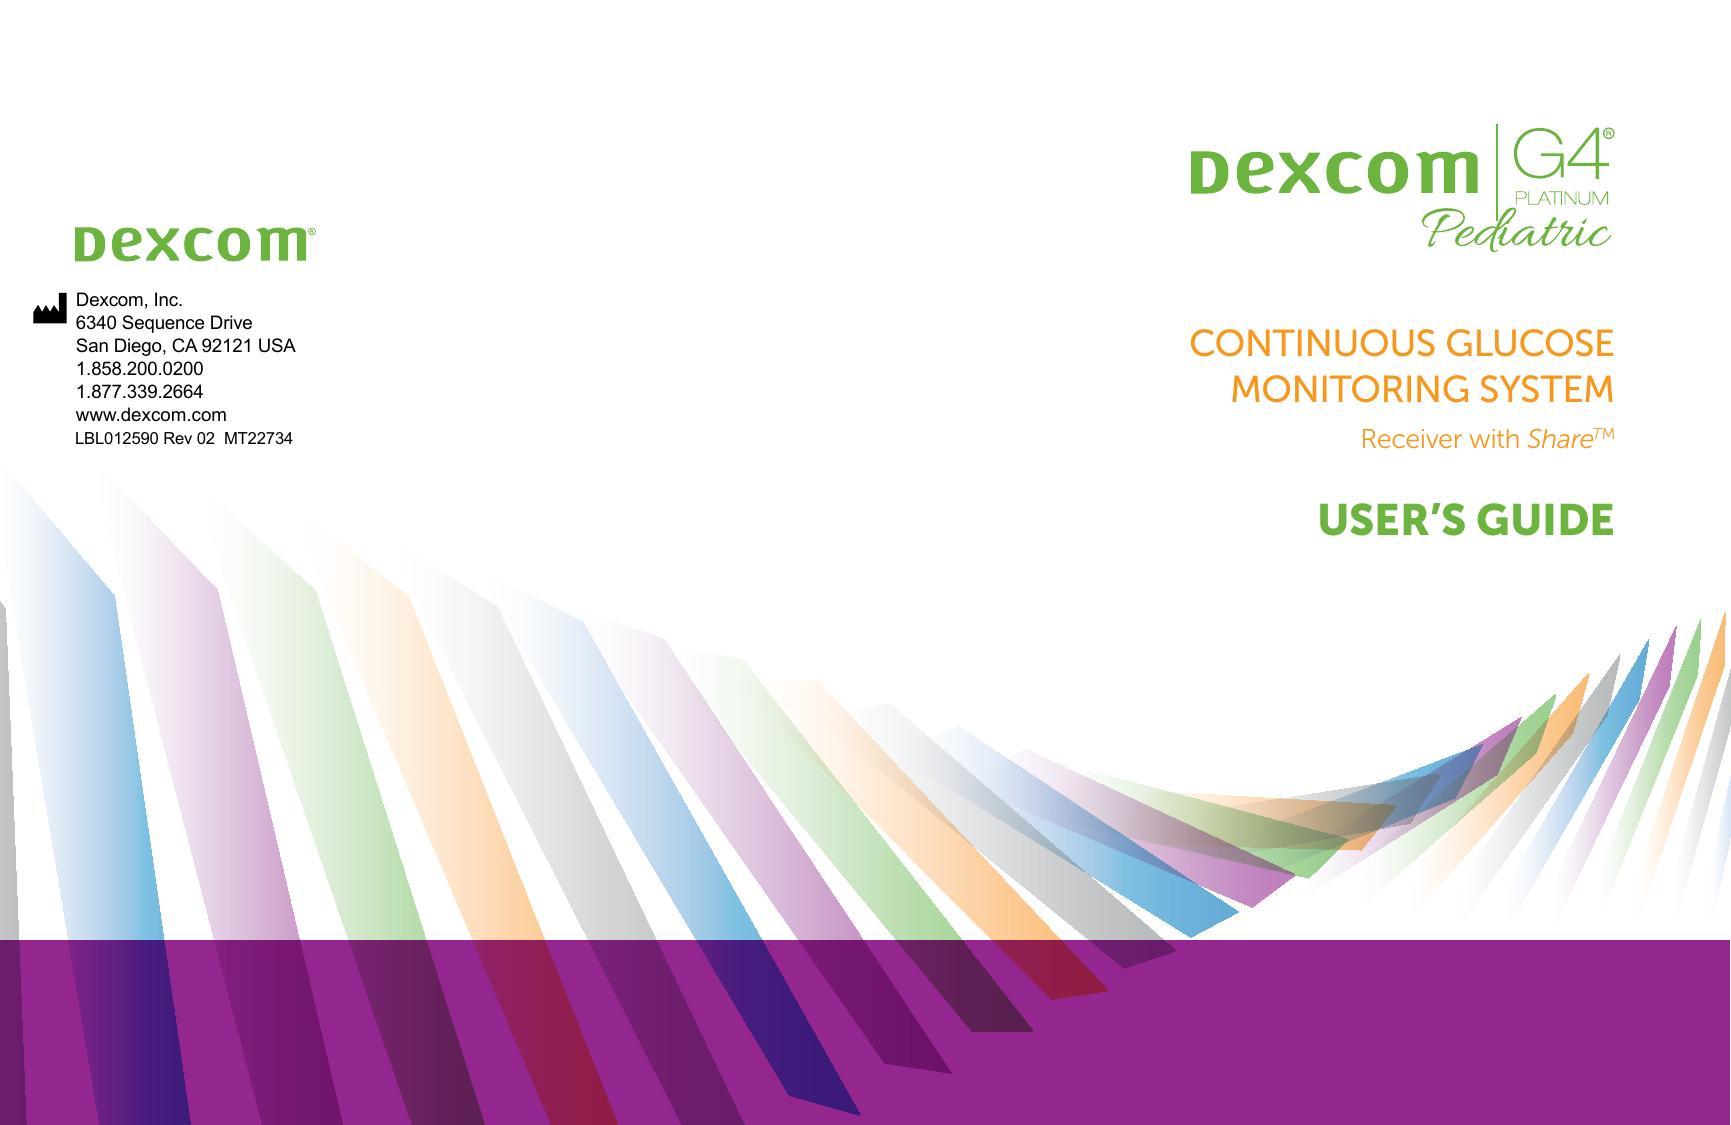 dexcom-g4-platinum-pediatric-continuous-glucose-monitoring-system-users-guide.pdf